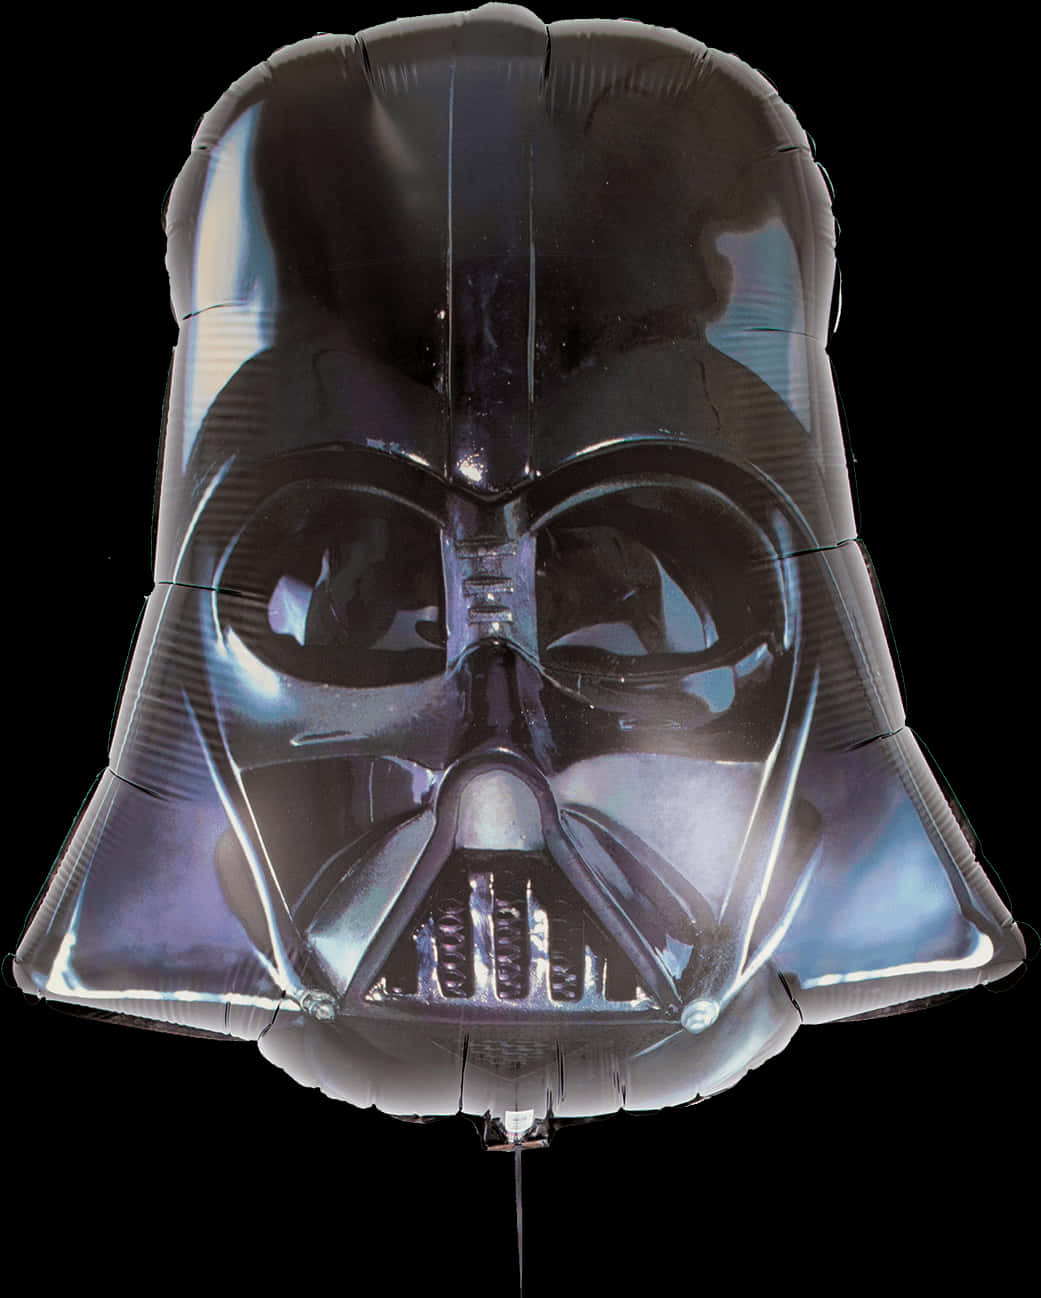 Darth Vader Balloon Portrait